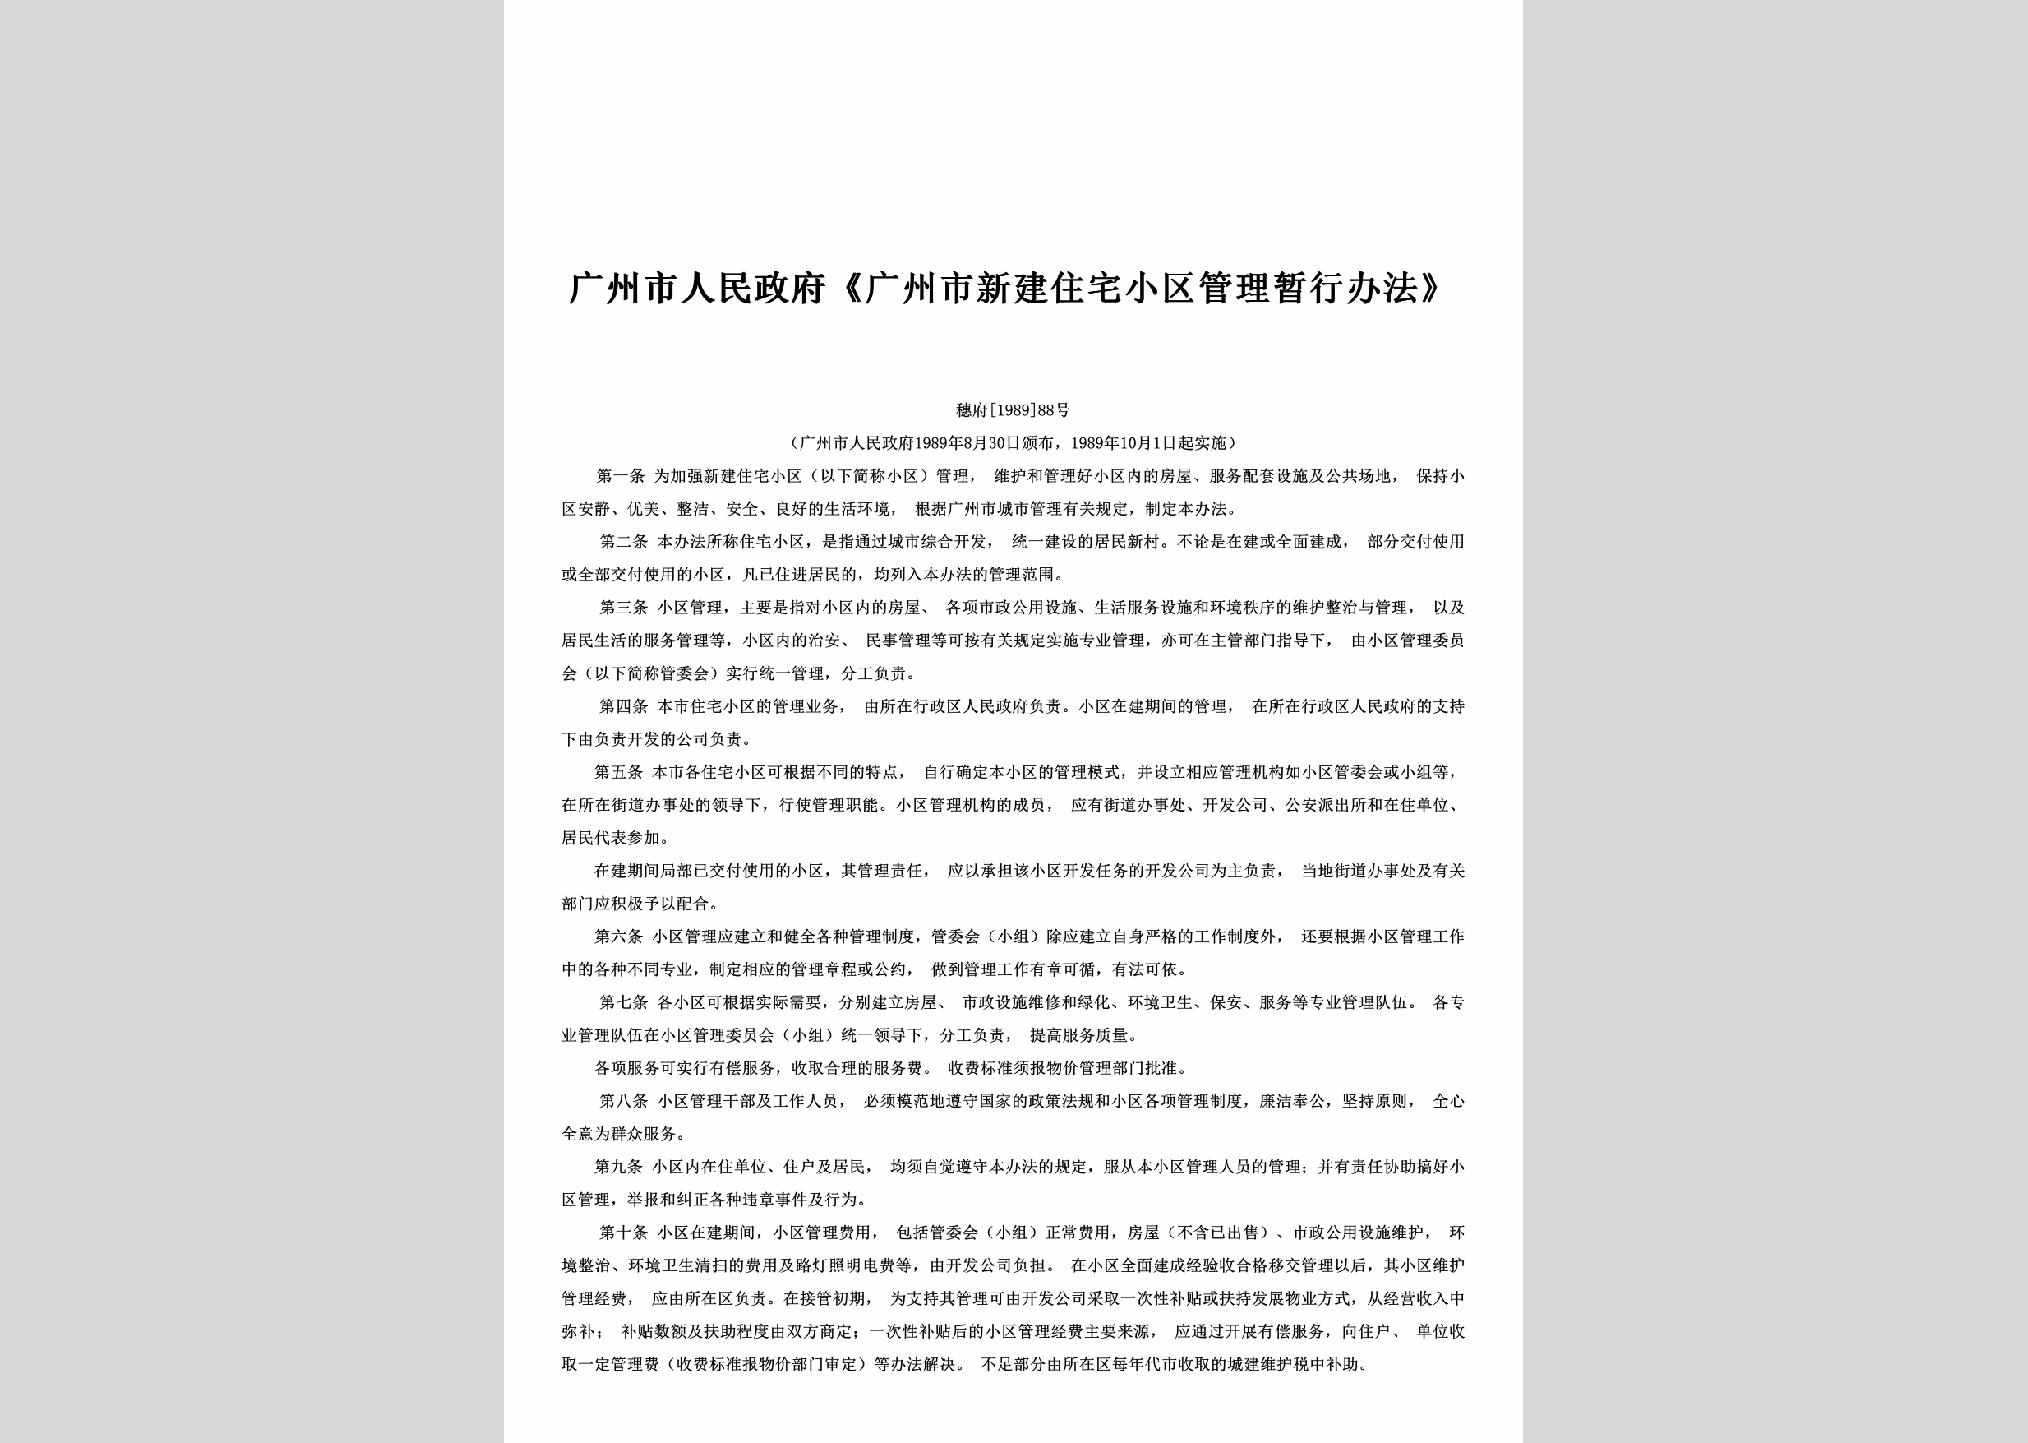 穗府[1989]88号：《广州市新建住宅小区管理暂行办法》